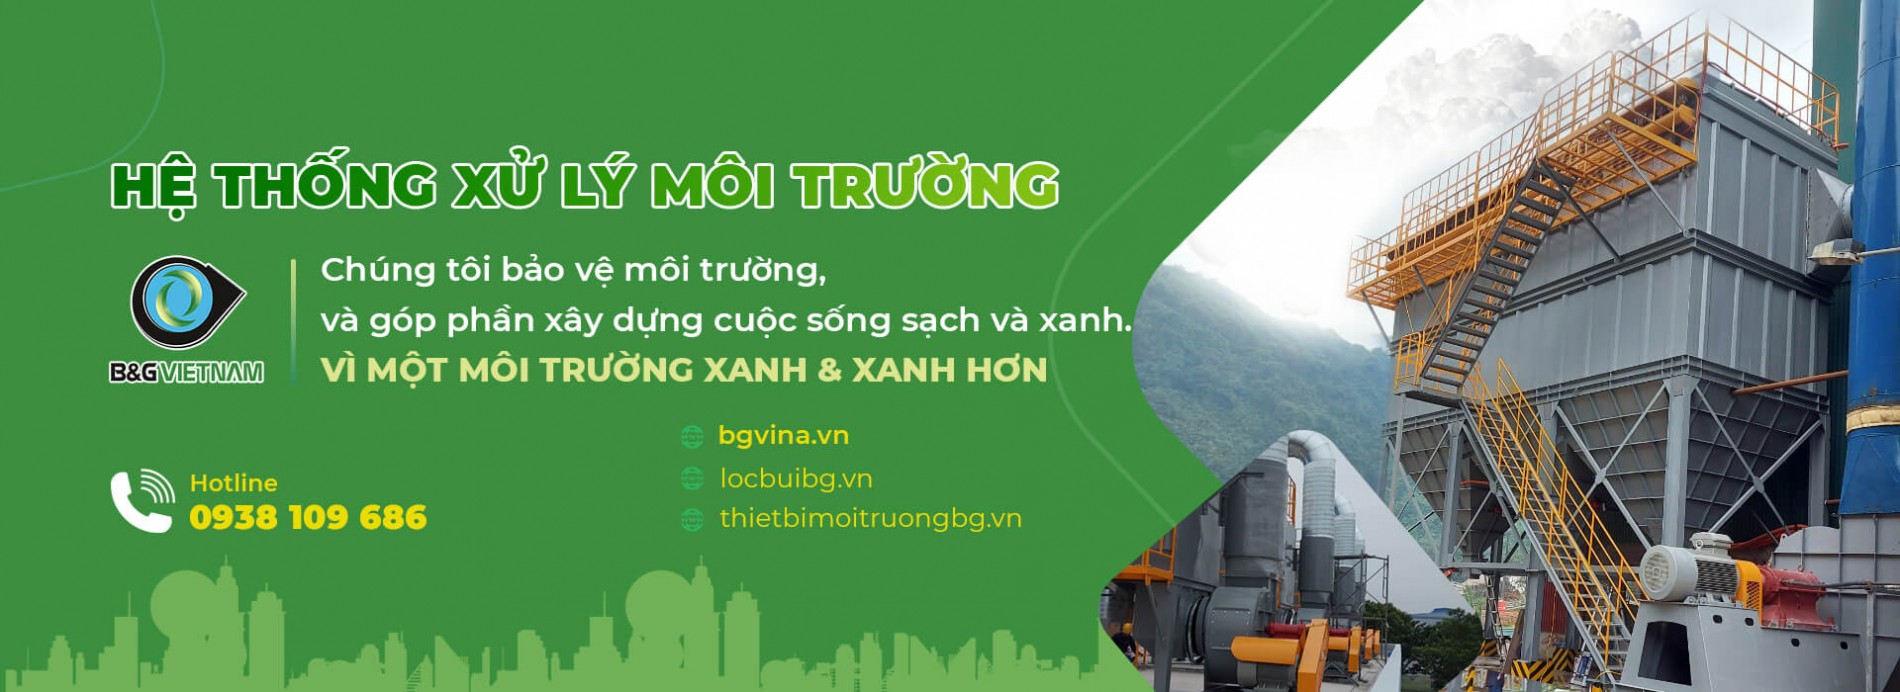 he-thong-xu-ly-moi-truong